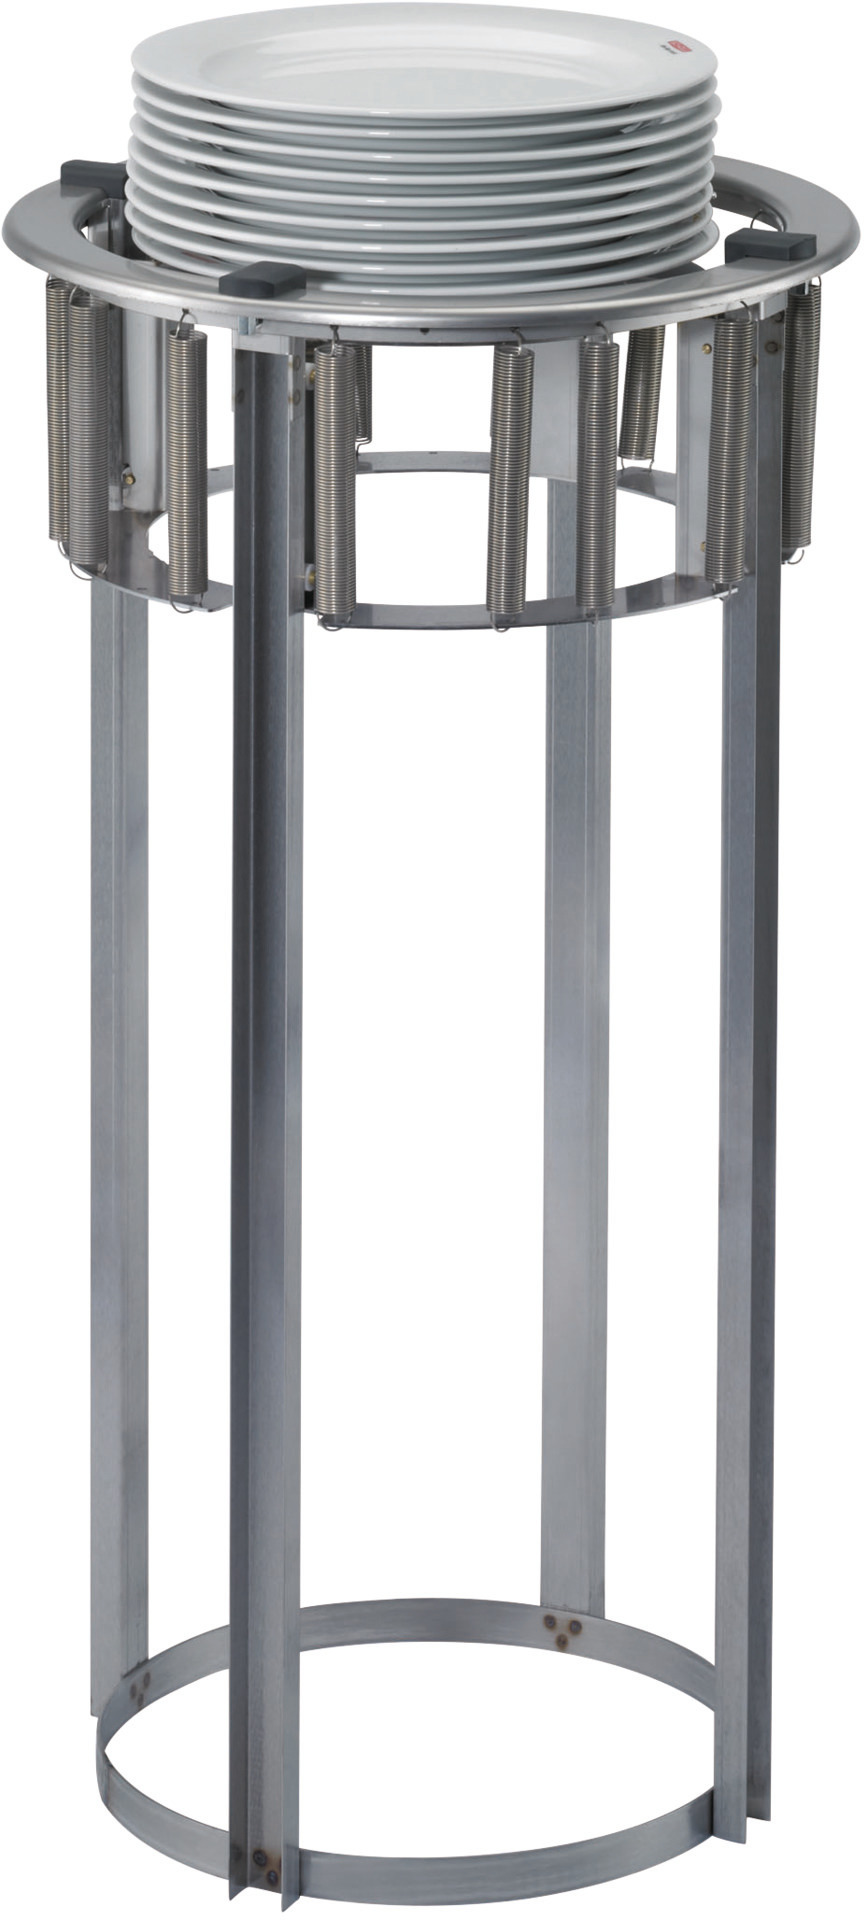 Teller-Einbauspender unbeheizt für 50  Teller 190 - 238 mm Einbautiefe 760 mm